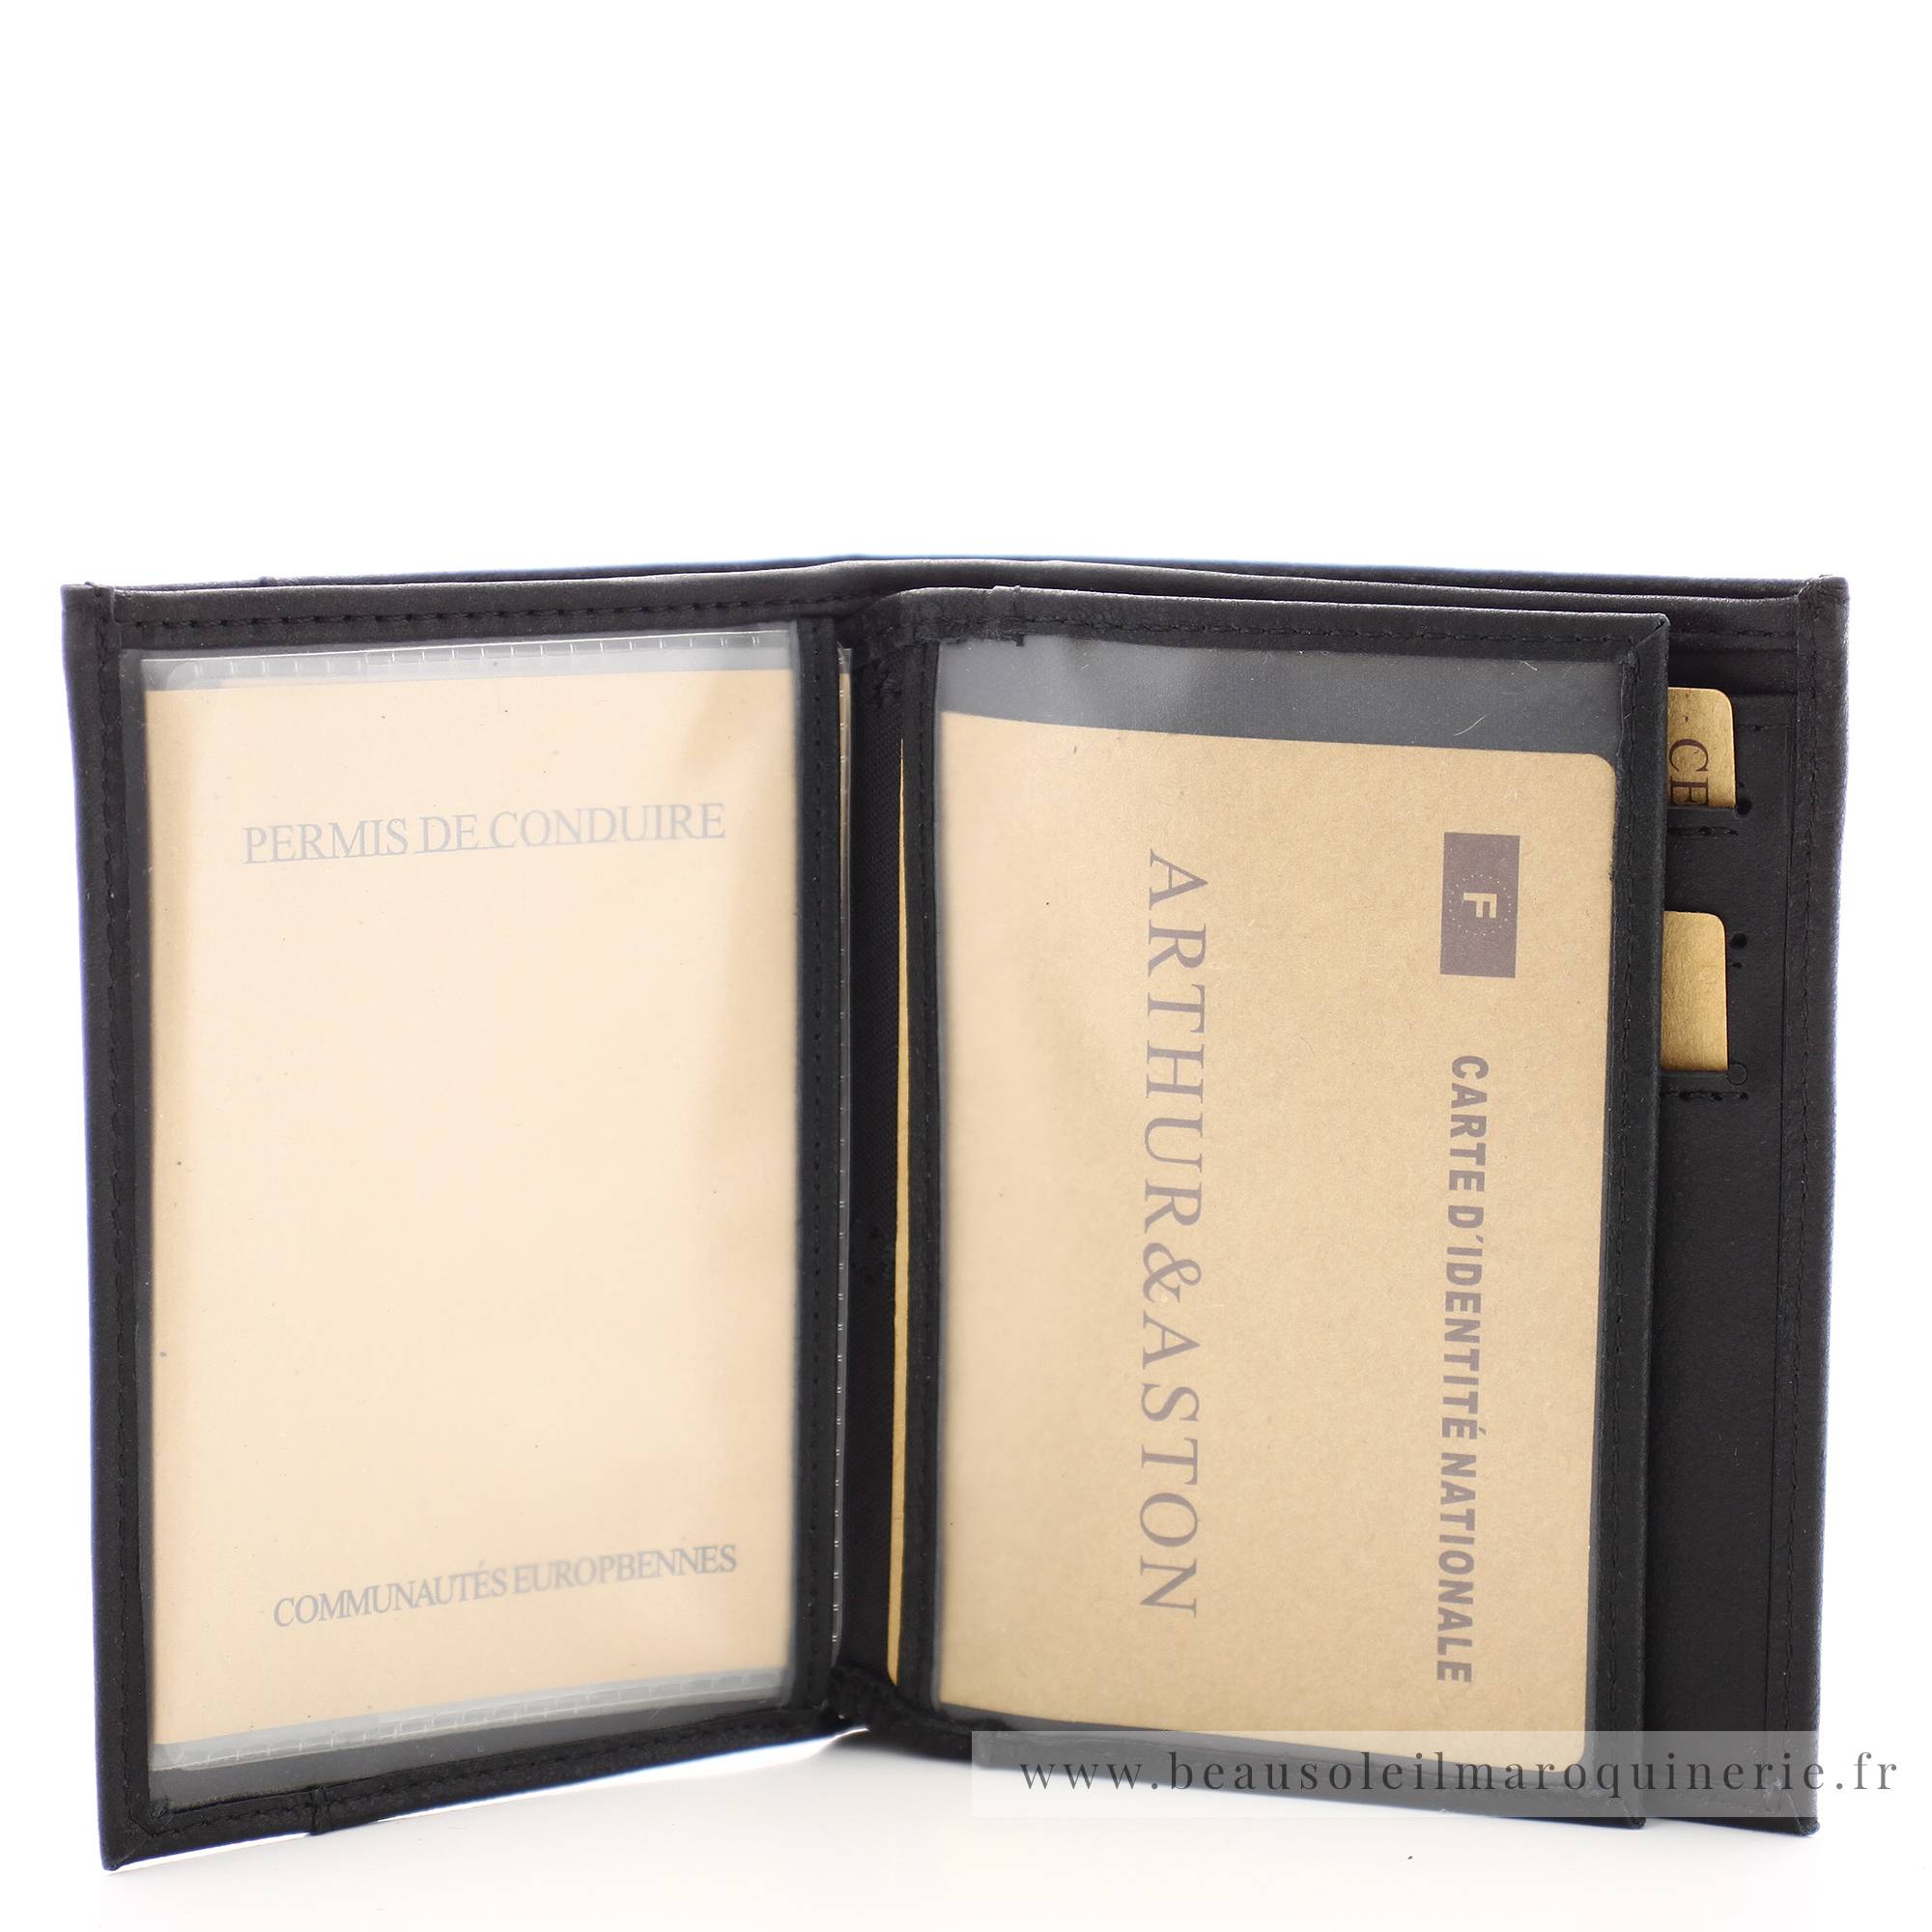 Portefeuille européen Arthur et Aston 1438-800 A couleur noir ouvert sur fenêtres transparentes